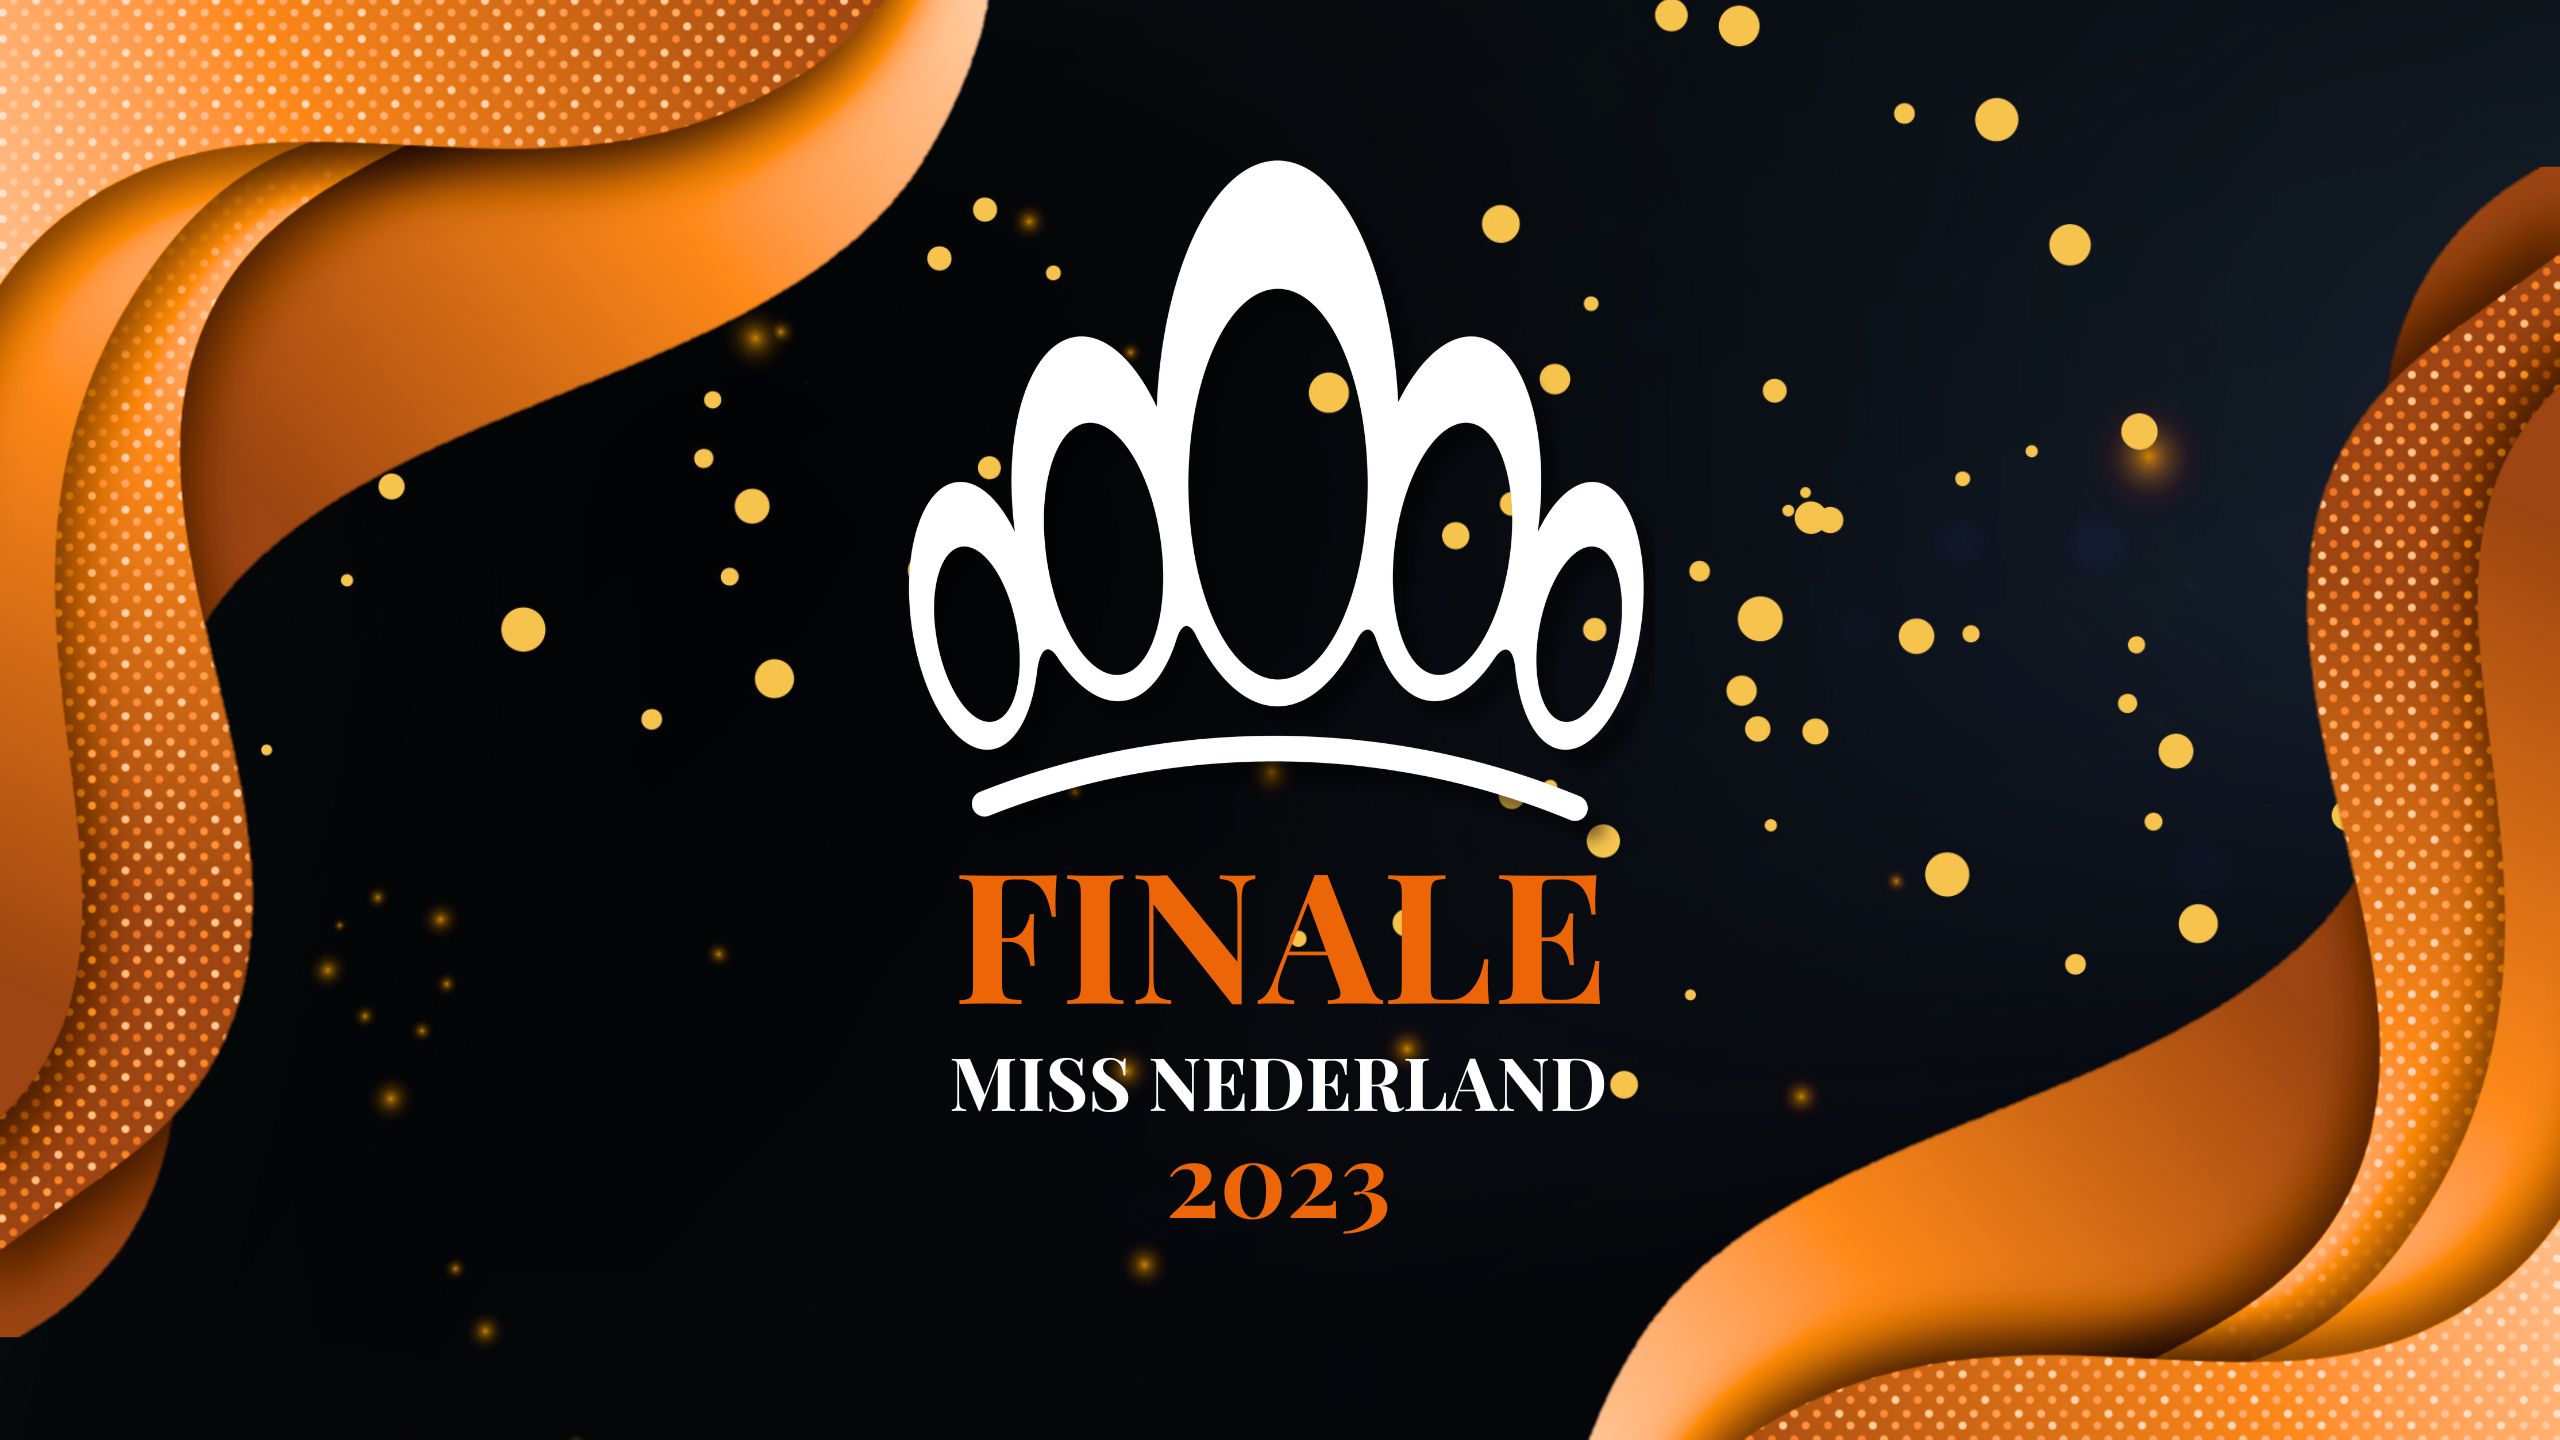 Finaleshow Miss Nederland 2023